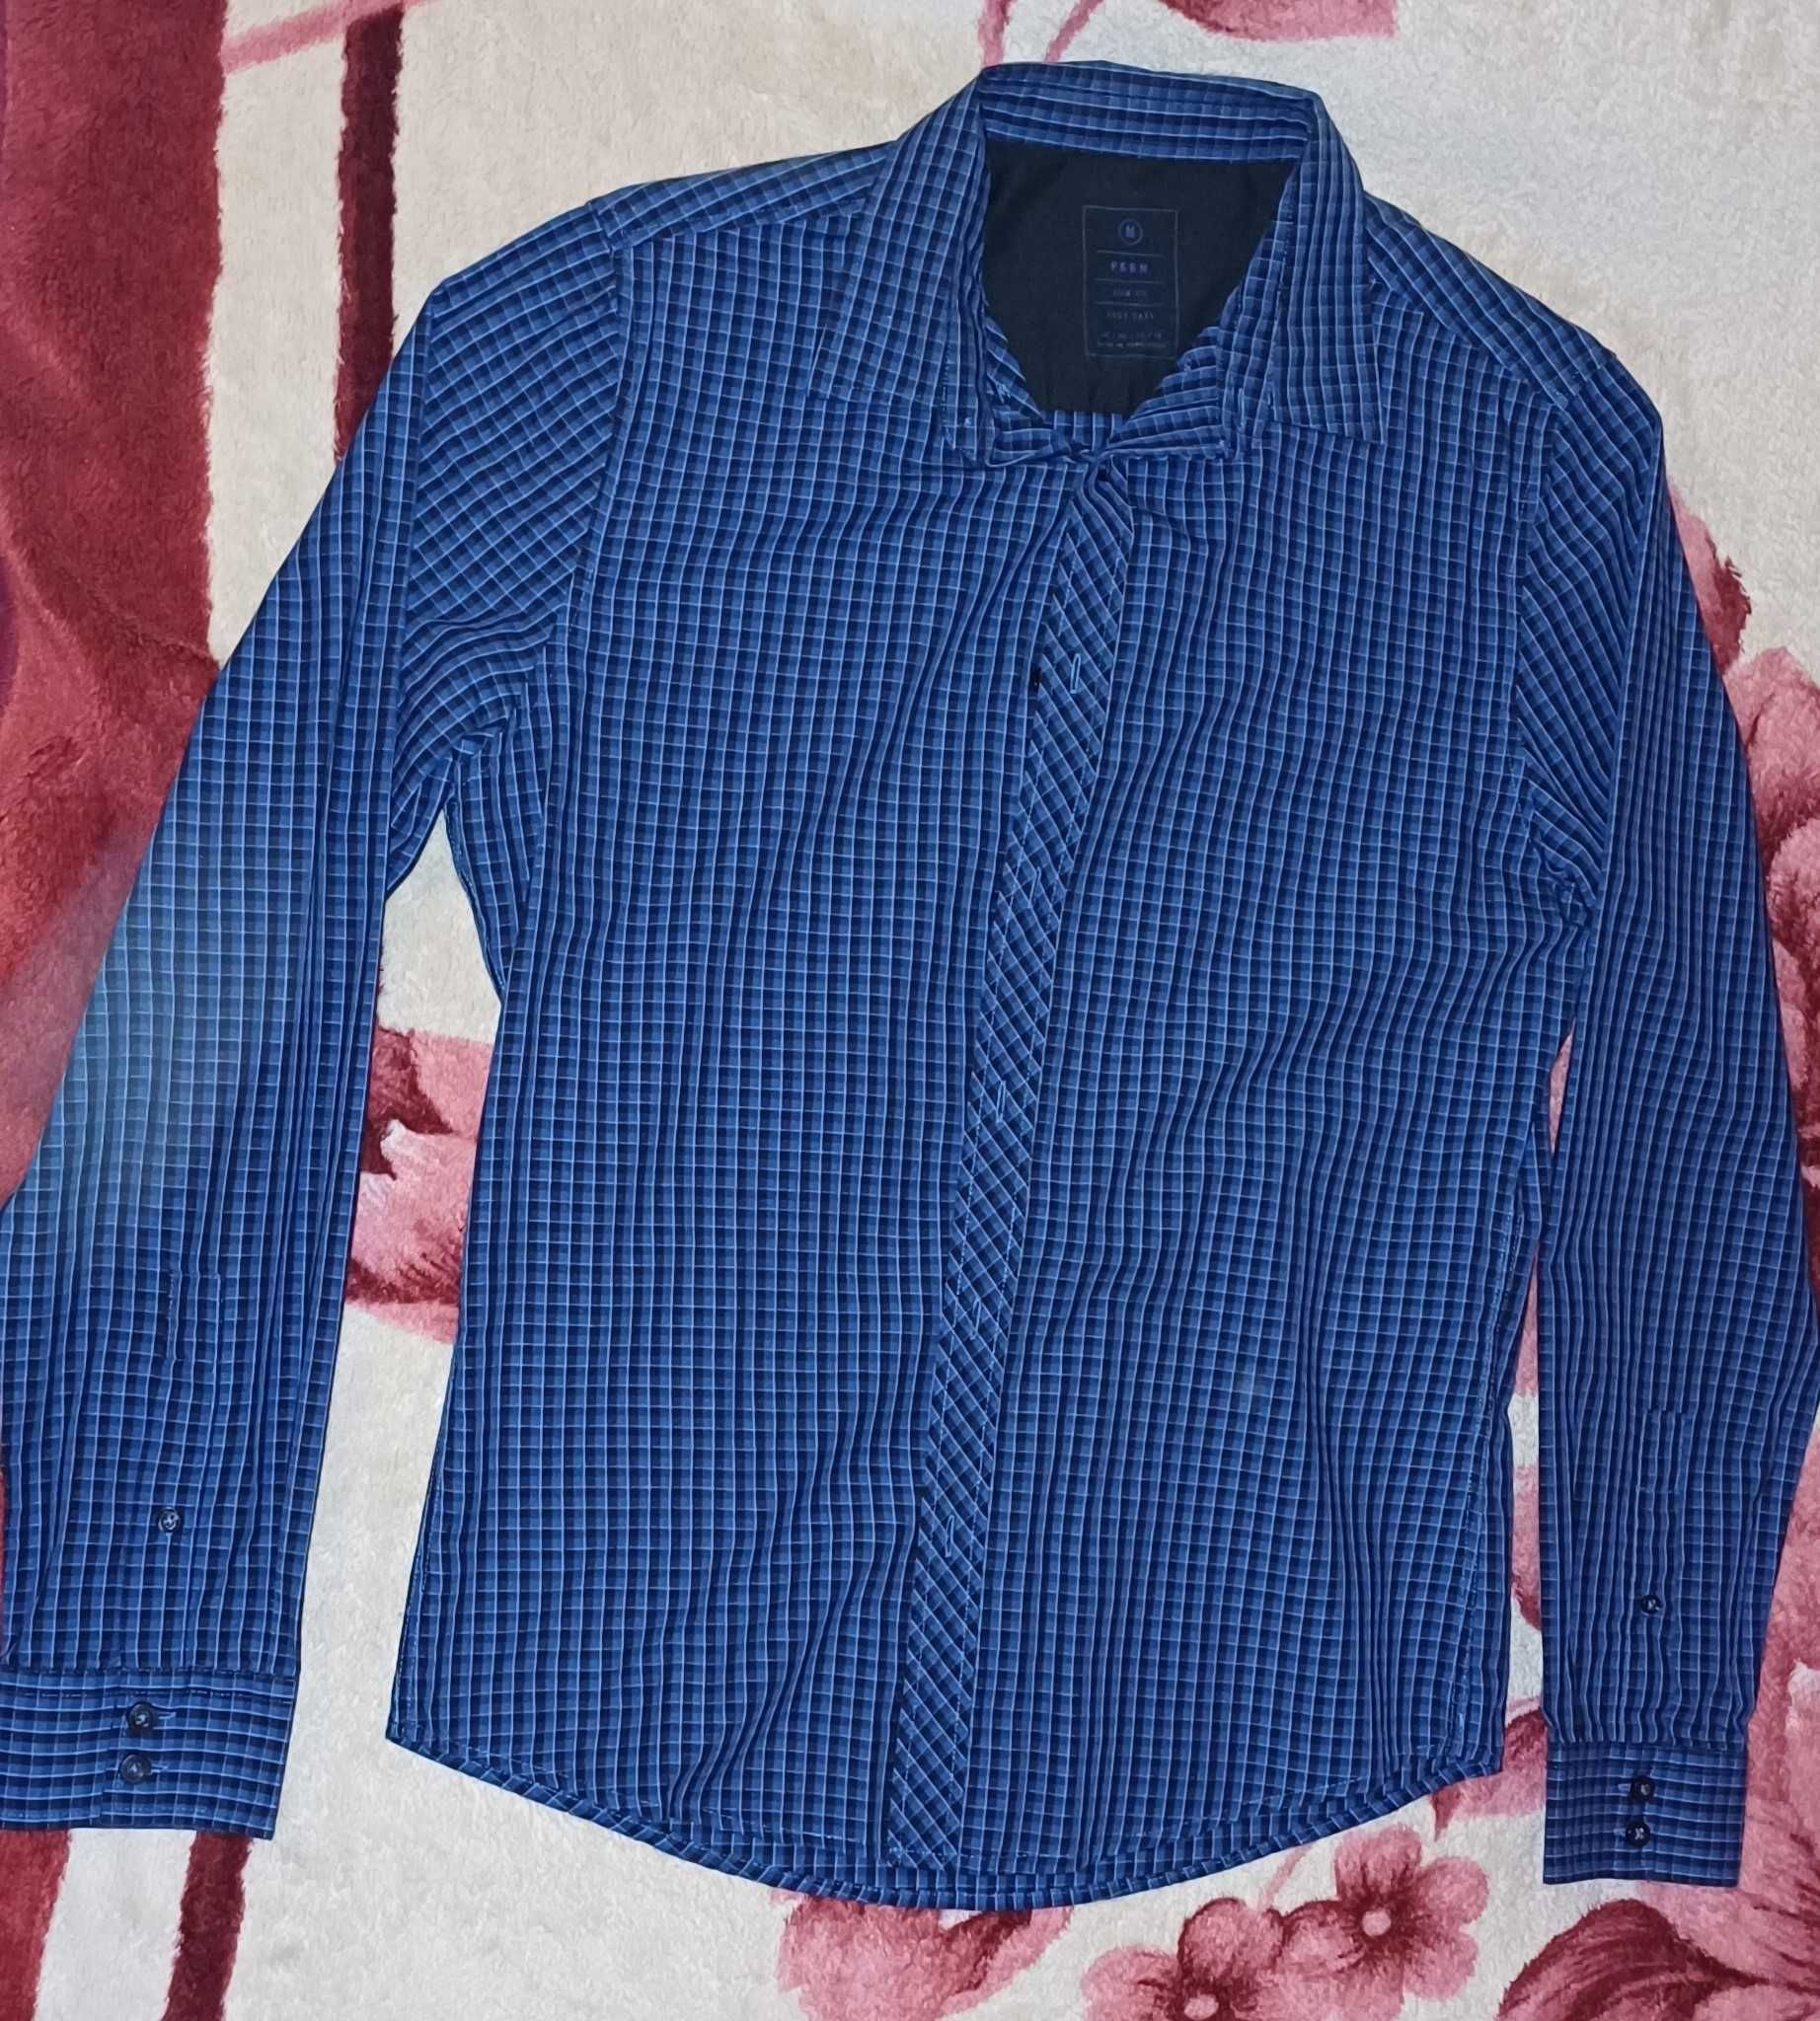 Koszule męskie używane M z długim rękawem - 6 zł sztuka